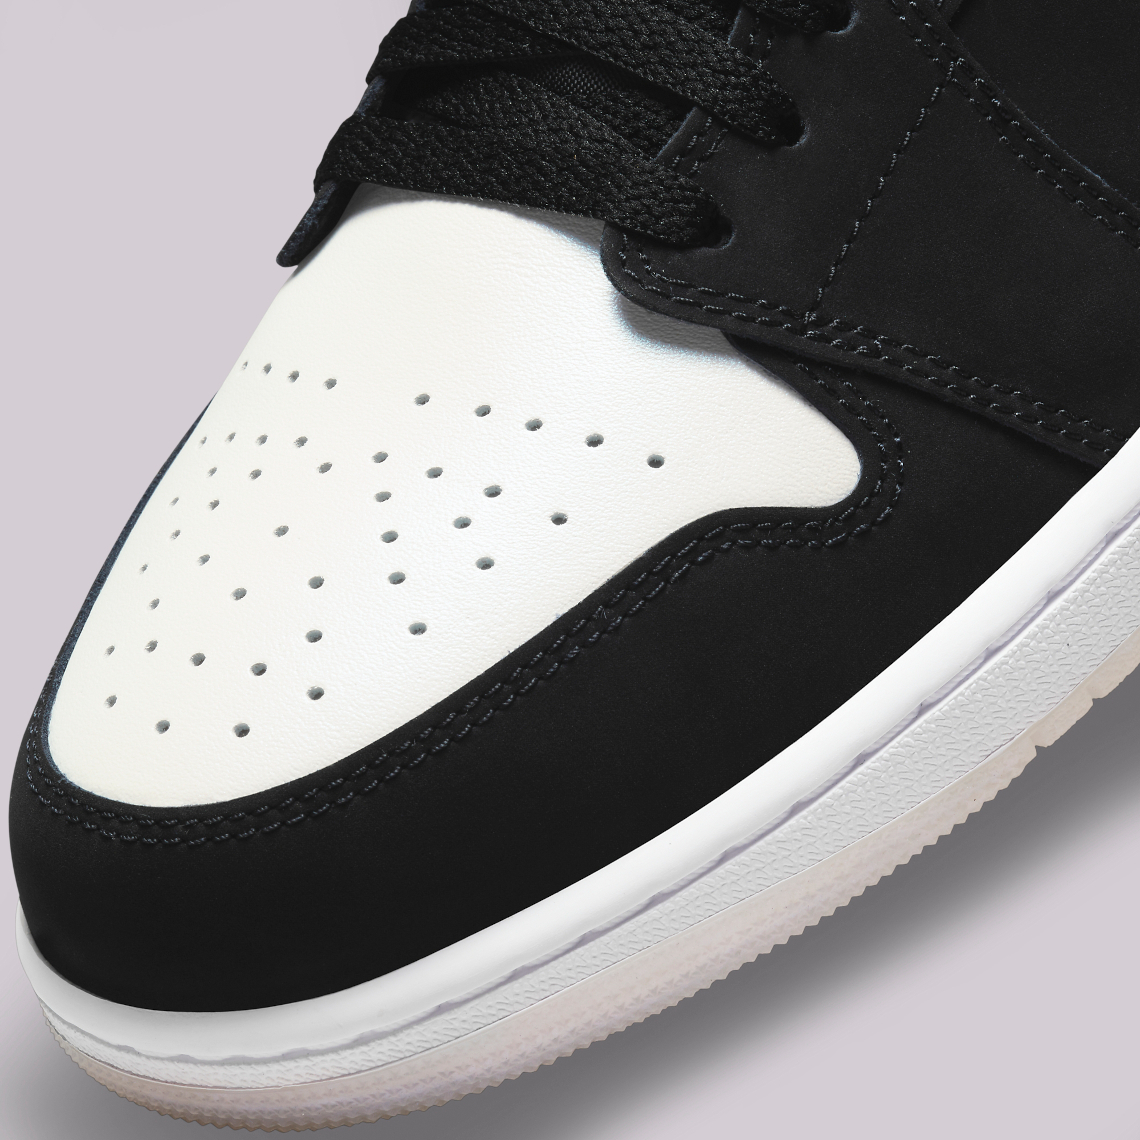 Air Jordan 1 Low Black White Diamond DH6931-001 | SneakerNews.com